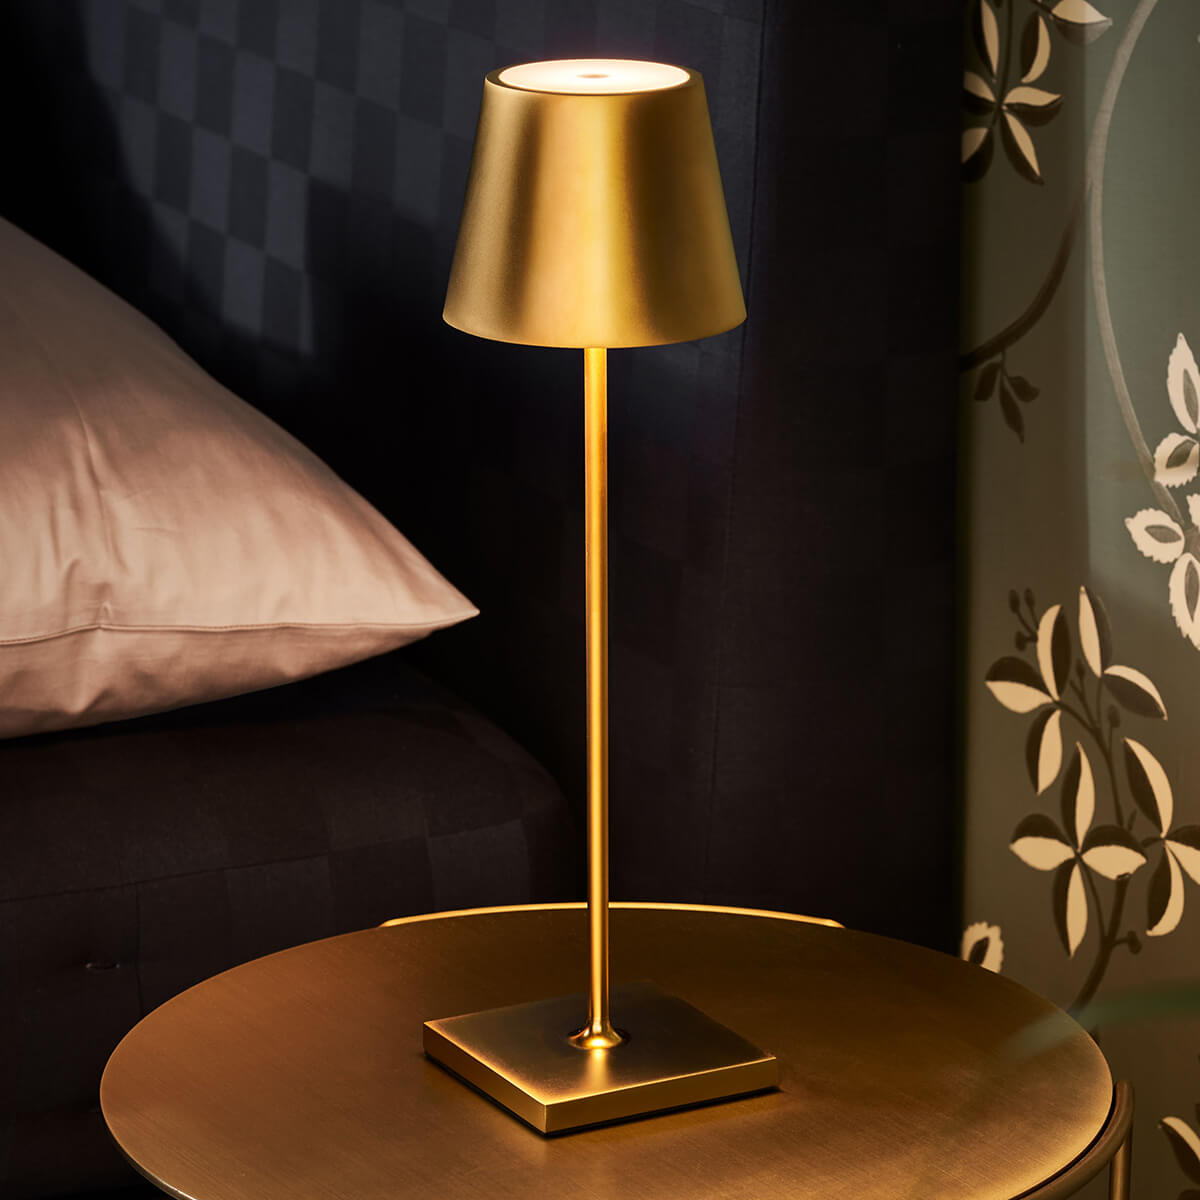 Art Deco Tischlampe Leuchte Bodenleuchte Lampe Lamp ceramic brass Fuss 35 cm 